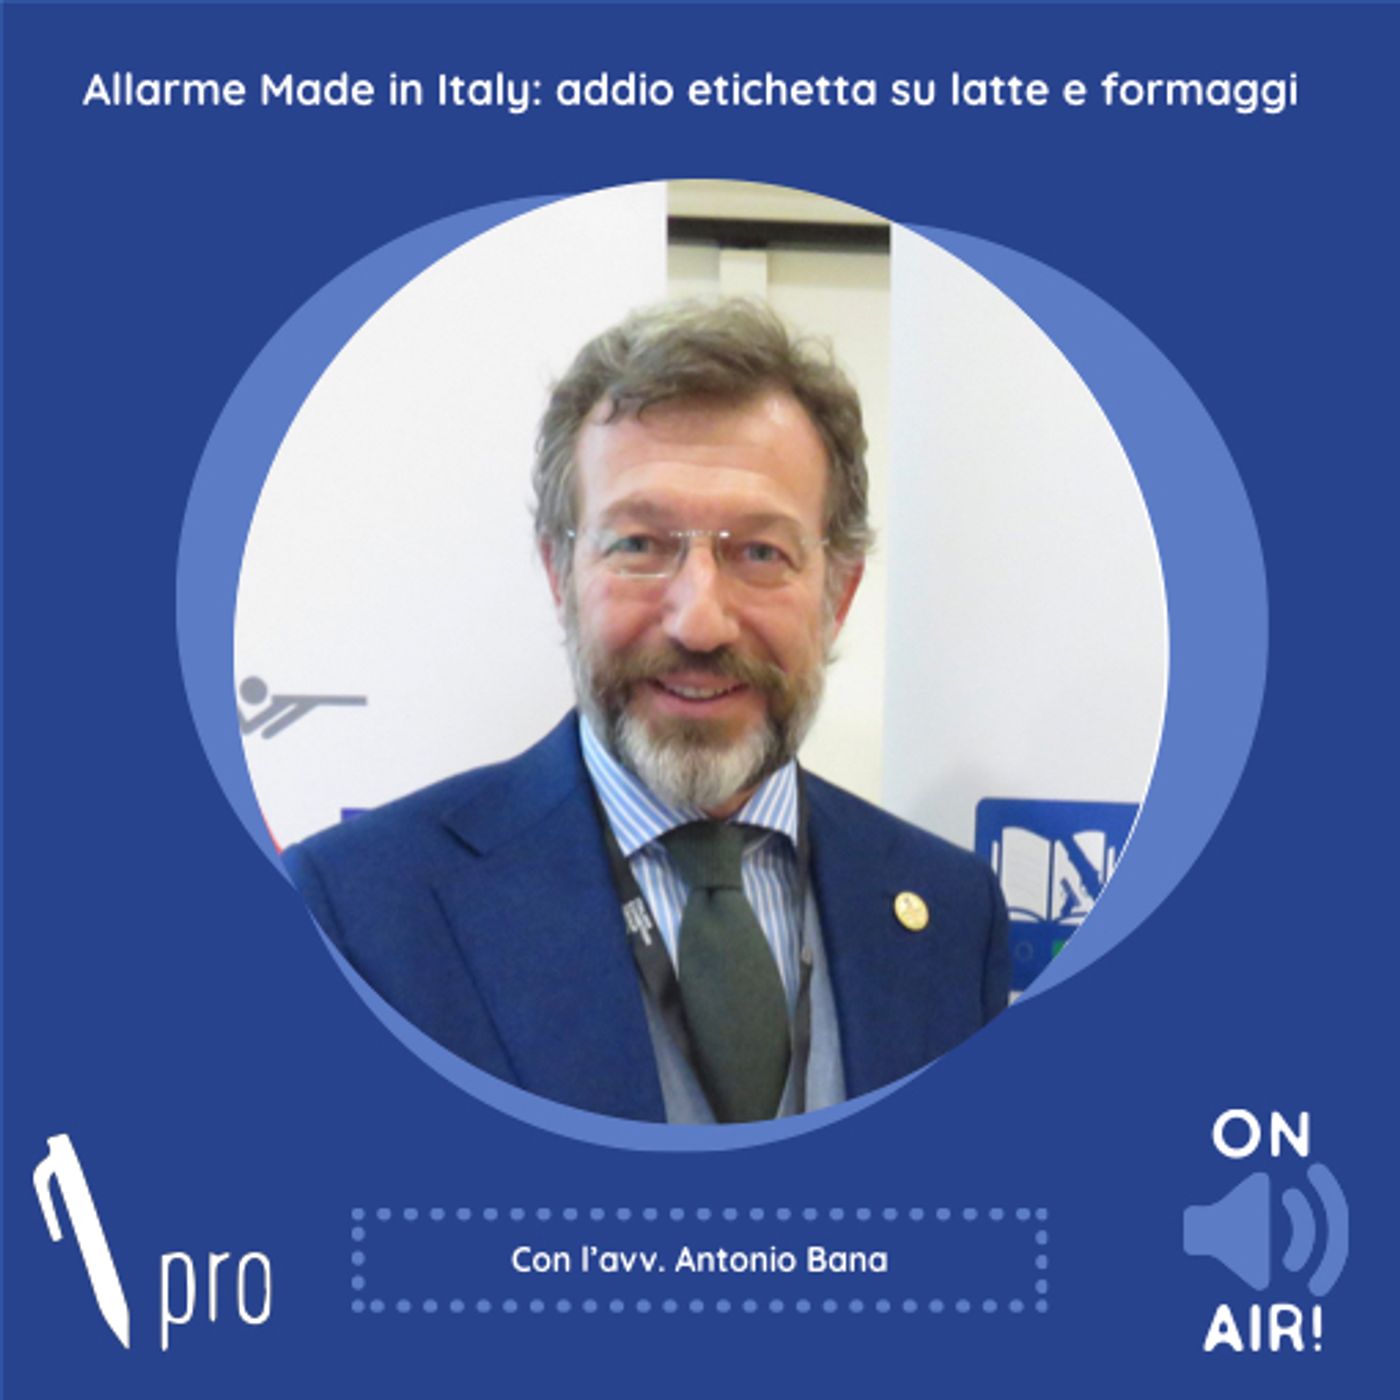 Skill Pro - Allarme Made in Italy: addio etichetta su latte e formaggi. Con l'avv. Antonio Bana (Partner Studio Bana)